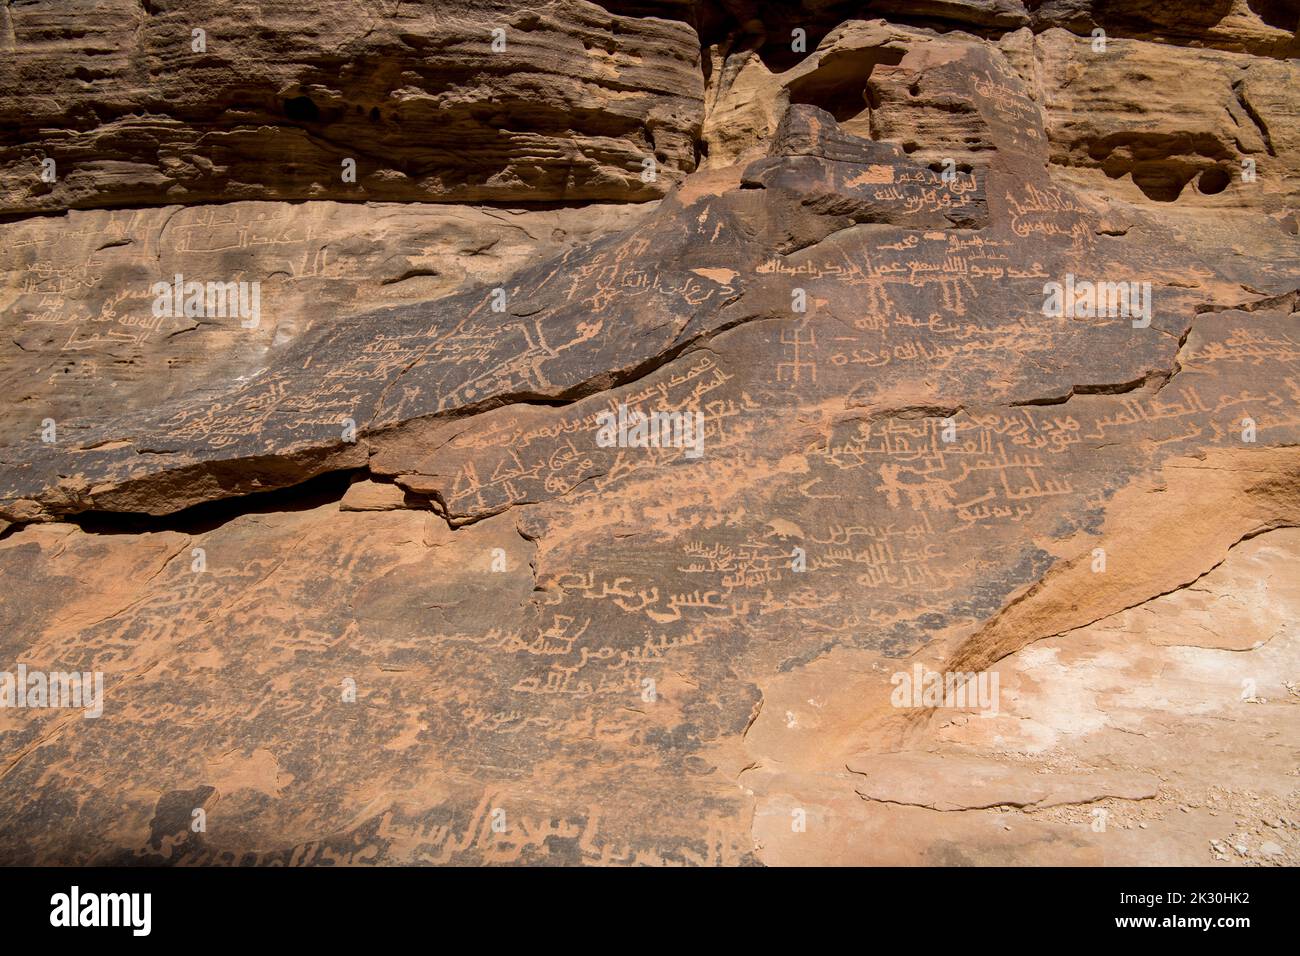 Scénario de Nabatéan sur le canyon de la fente de la face rockface près d'Al Ula Arabie Saoudite Banque D'Images